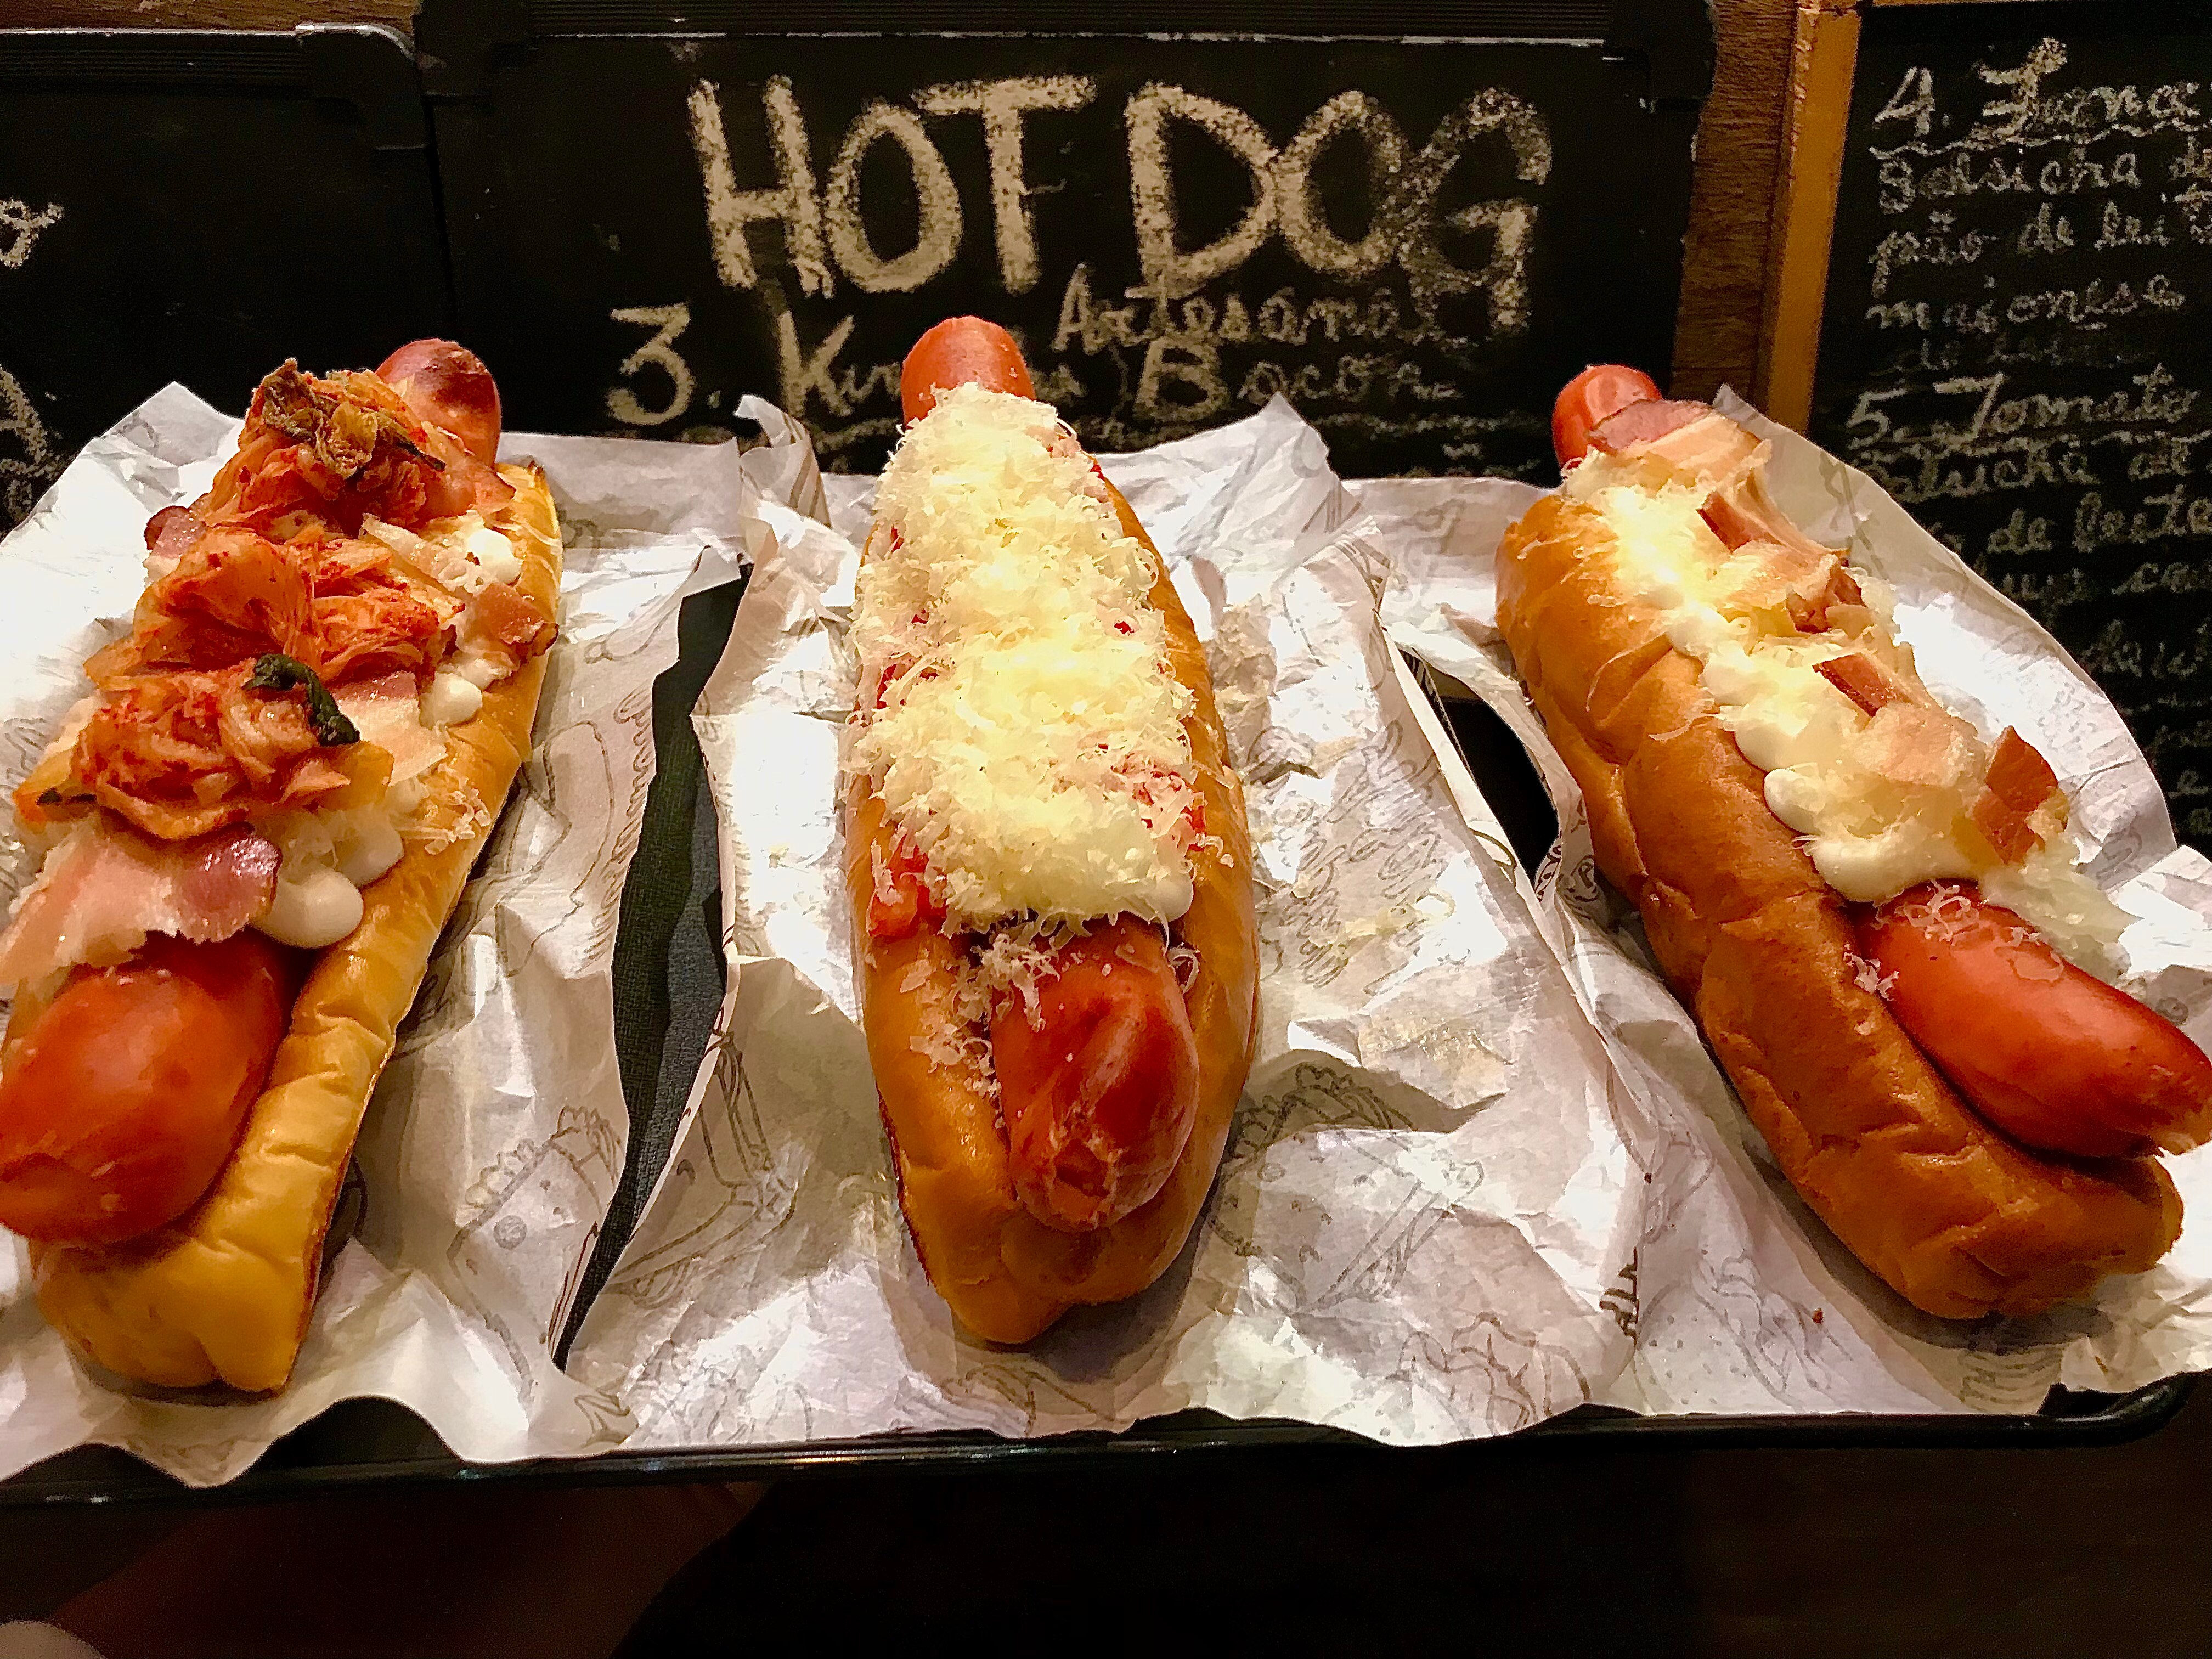 Onde comer cachorro-quente em São Paulo